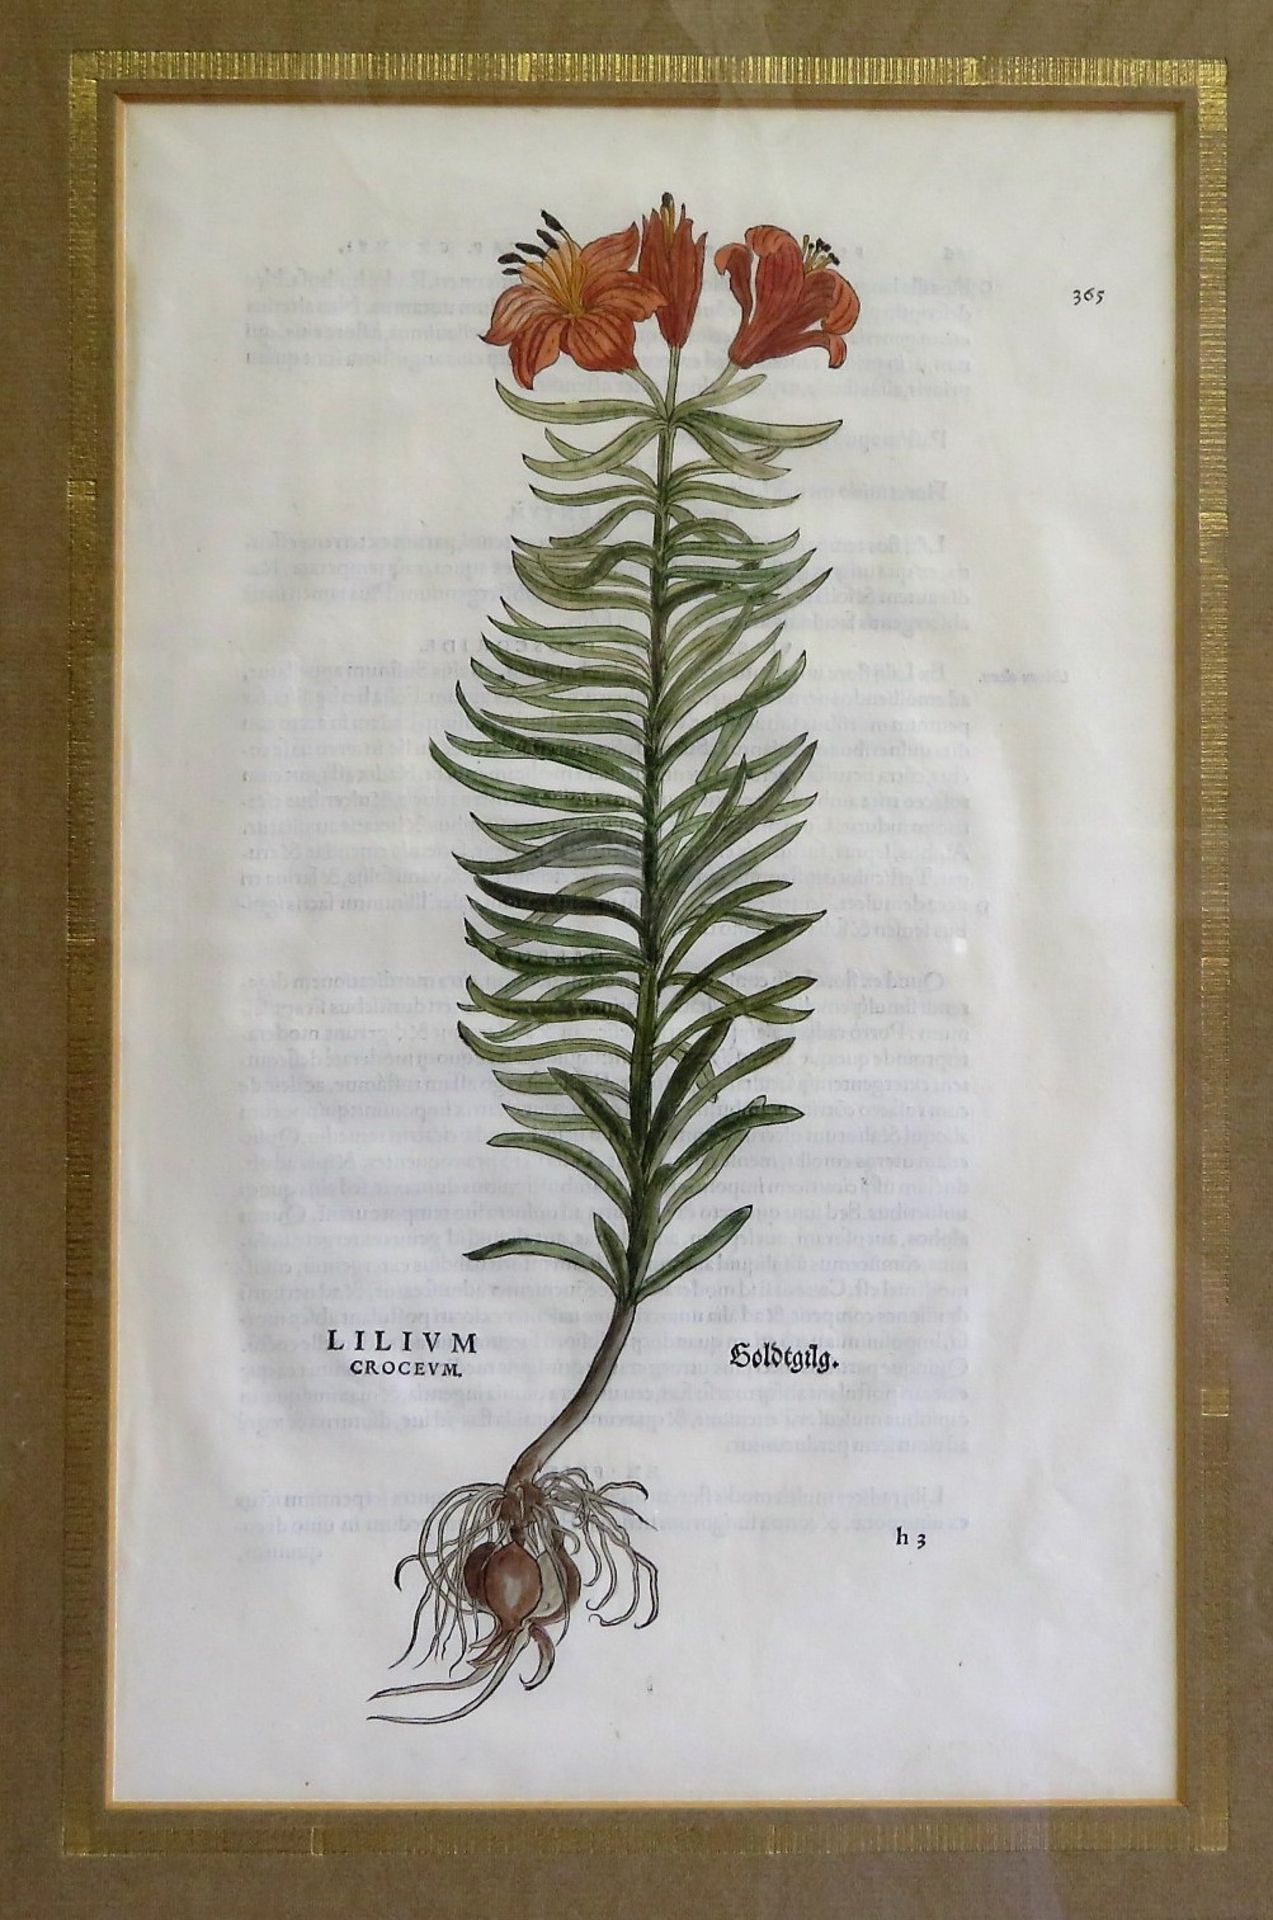 Fuchs, Leonhart, 1501 - 1566, Wemding - Tübingen, deutscher Mediziner und Botaniker,